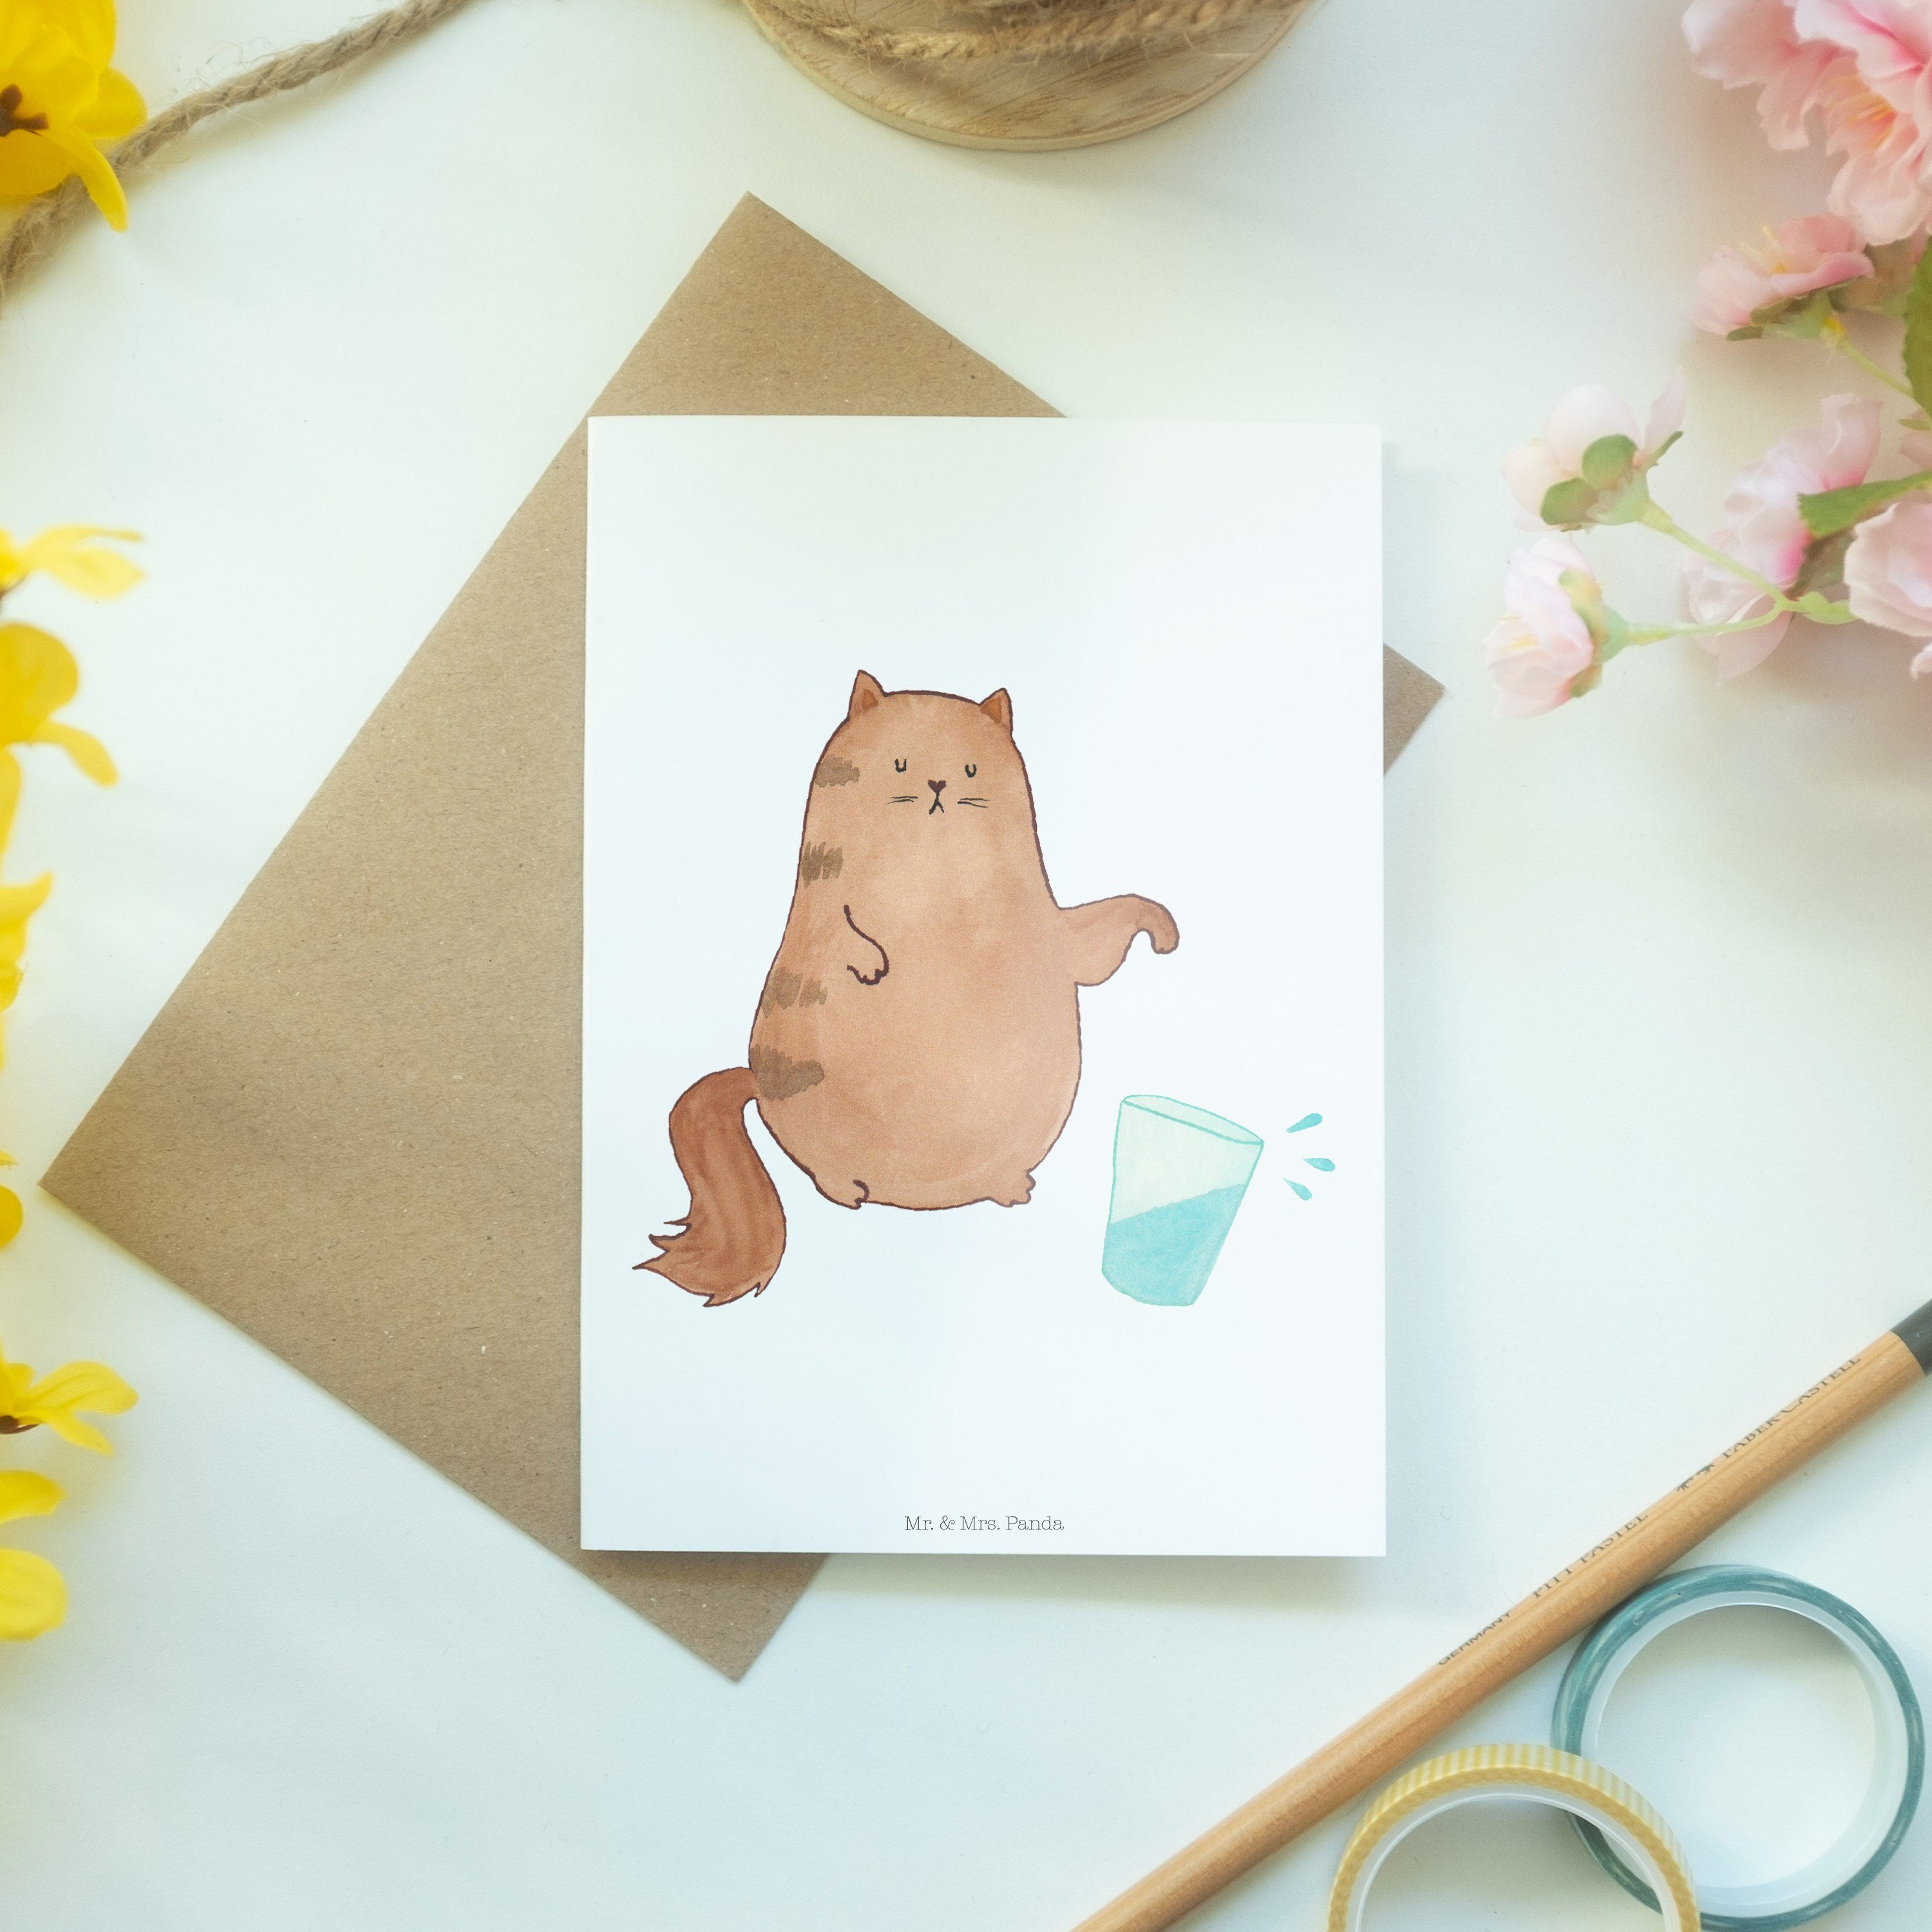 Katzen, Glückwunschkarte, - Mrs. Mr. - Geschenk, Grußkarte Einlad Panda & Katze Wasserglas Weiß